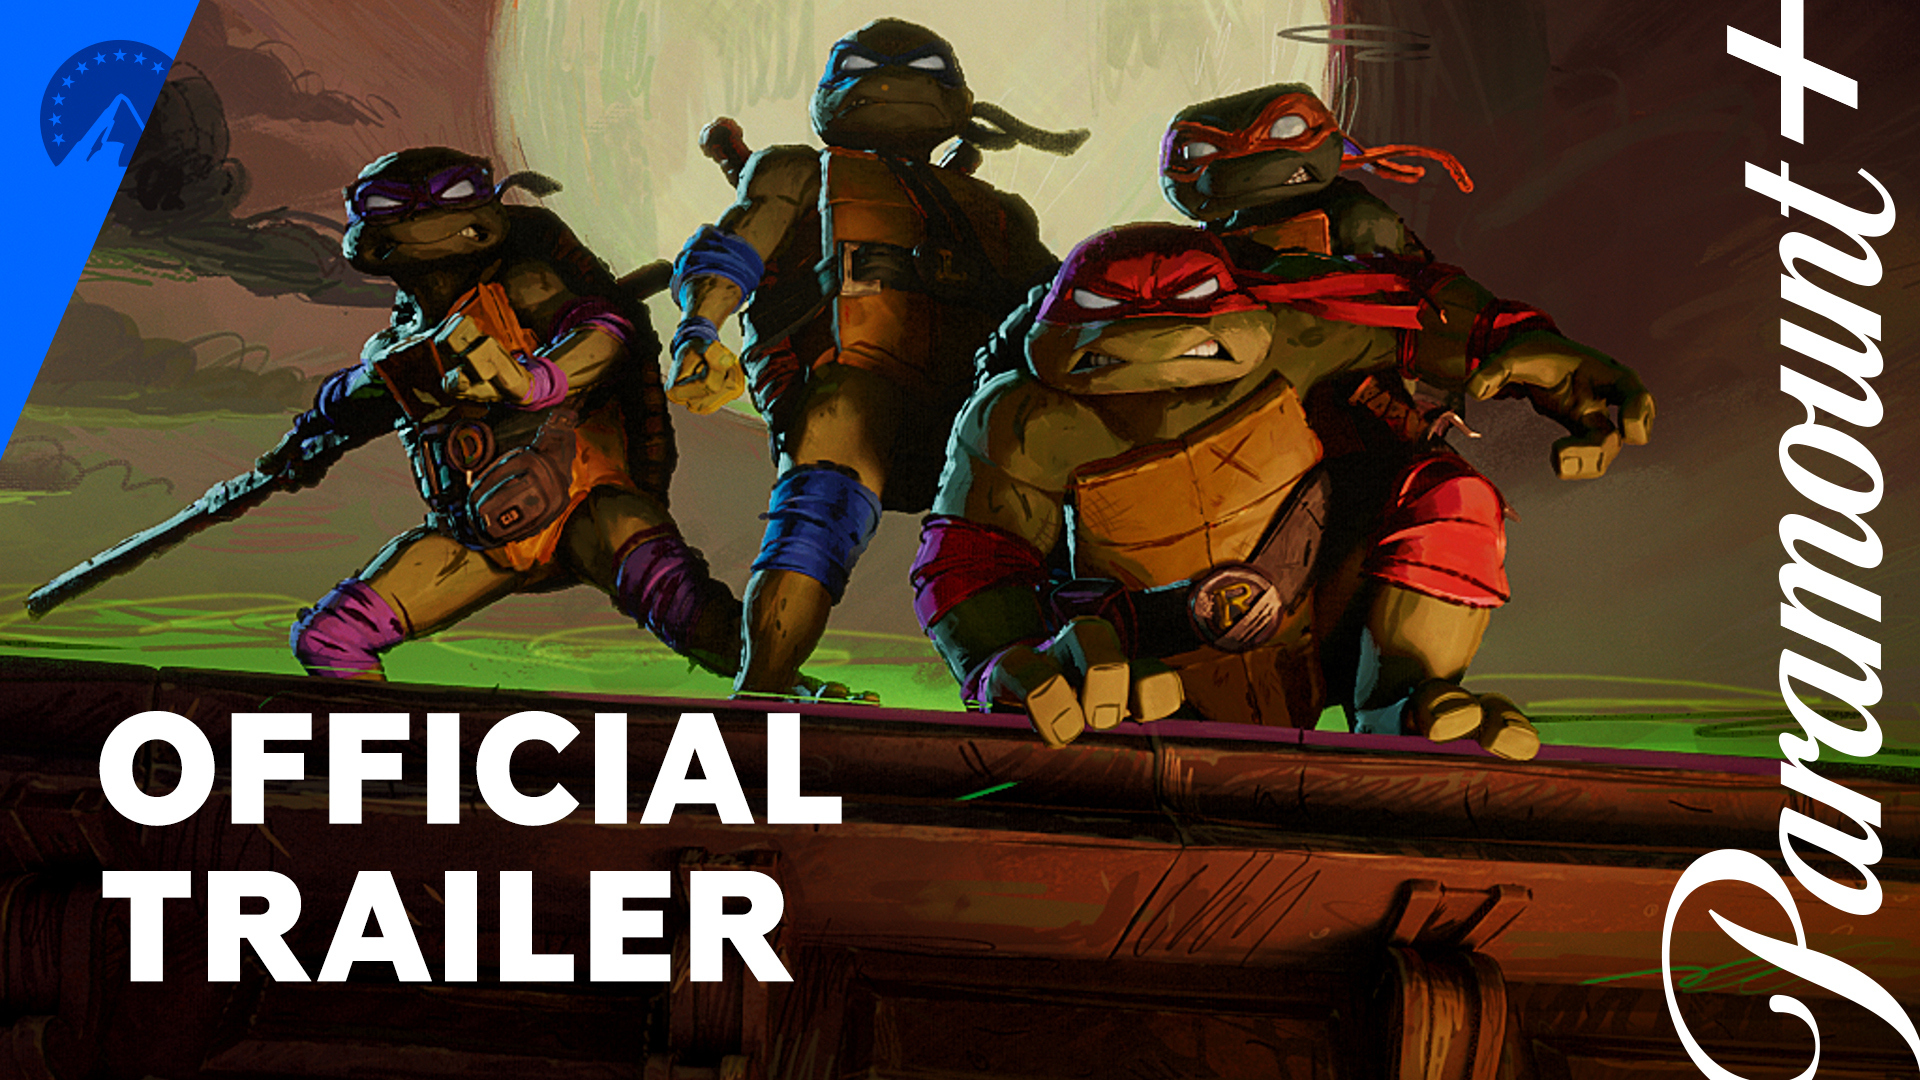 Teenage Mutant Ninja Turtles: Mutant Mayhem, Official Movie Teaser